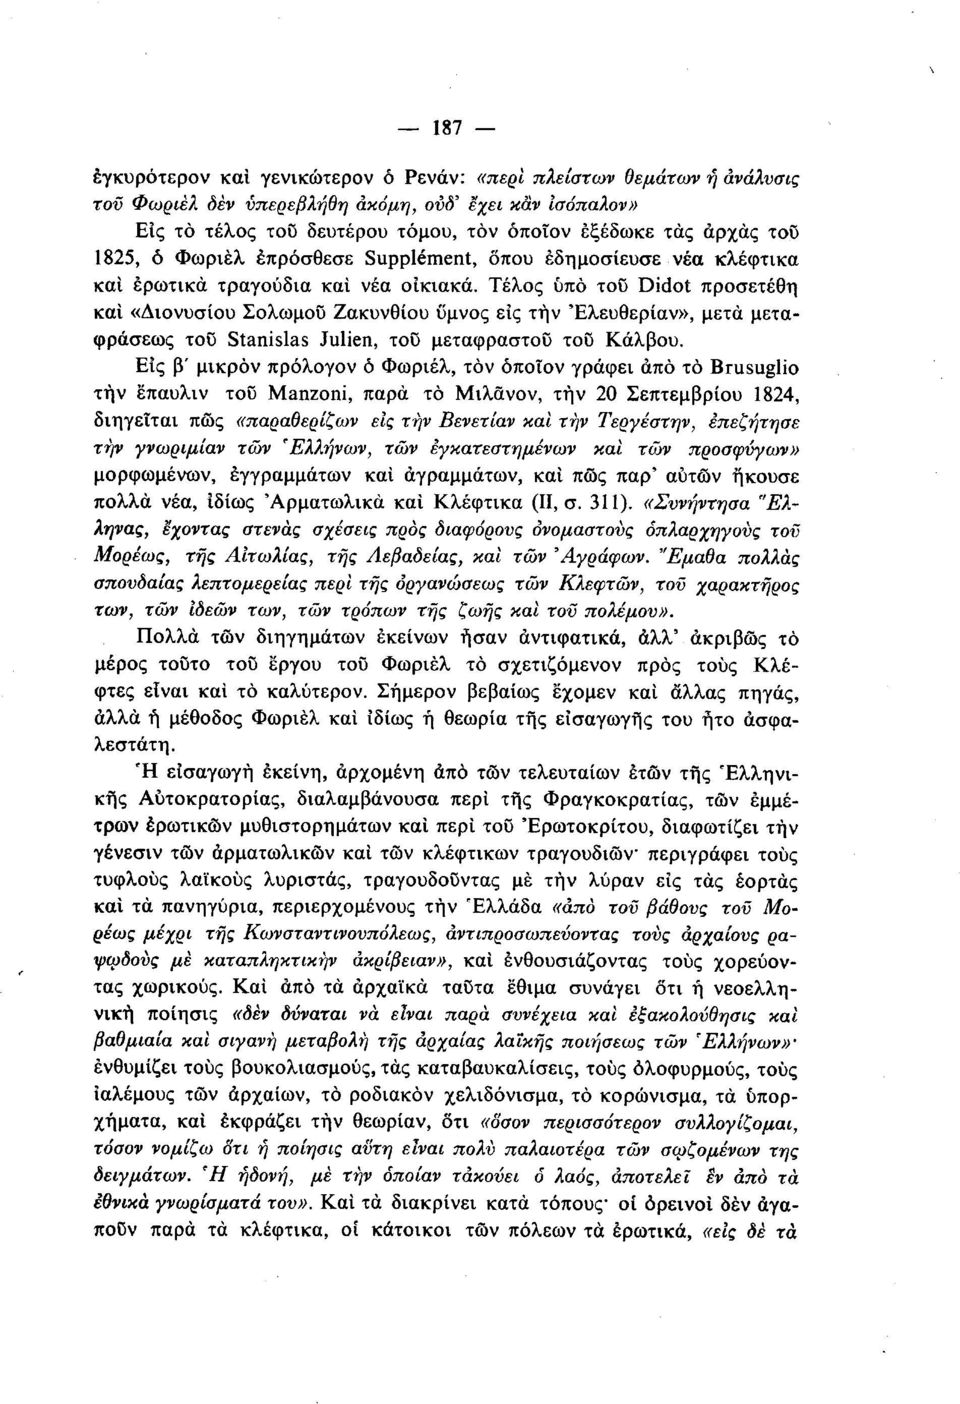 Τέλος υπό του Didot προσετέθη και «Διονυσίου Σολωμού Ζακυνθίου ύμνος εις την Έλευθερίαν», μετά μεταφράσεως του Stanislas Julien, του μεταφραστου του Κάλβου.